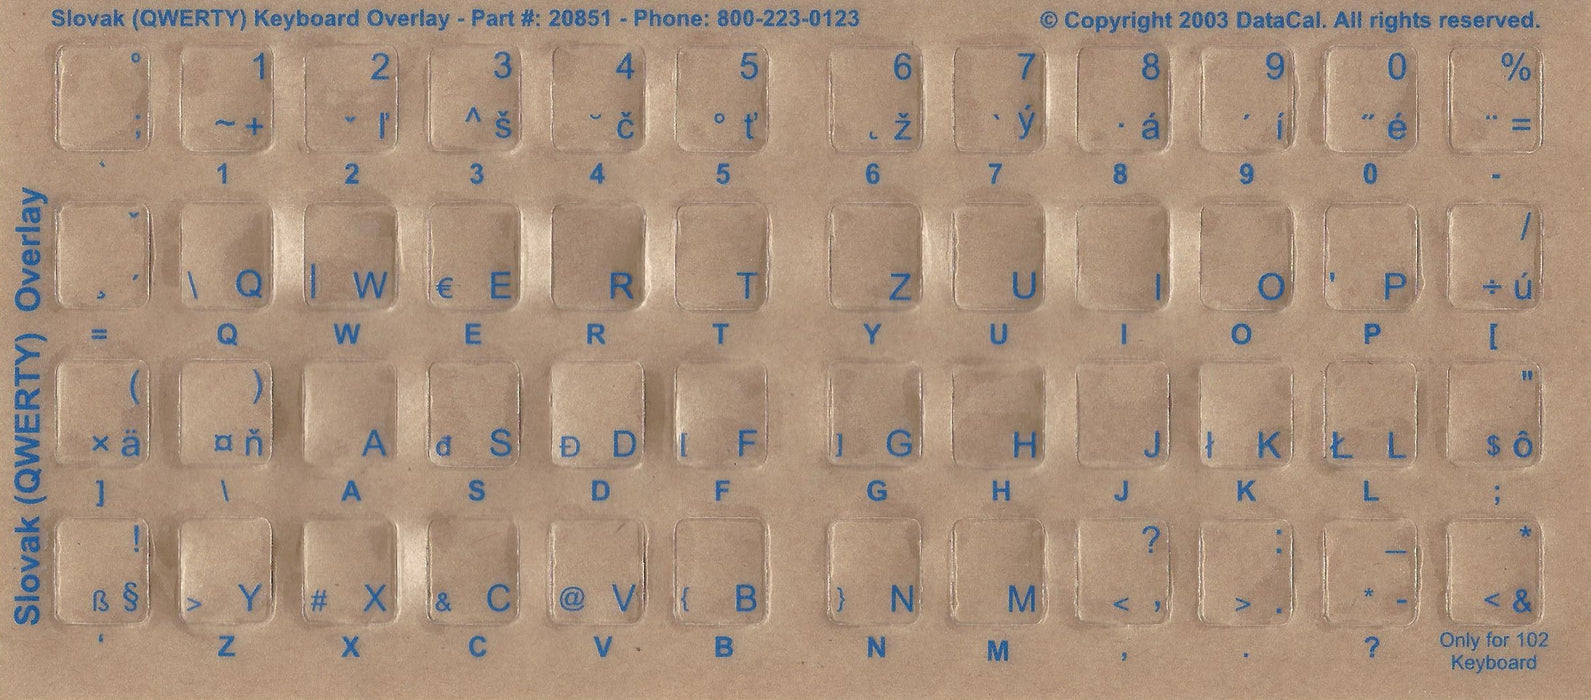 Pegatinas de teclado eslovaco - Etiquetas - Superposiciones con caracteres azules para teclado de computadora blanco